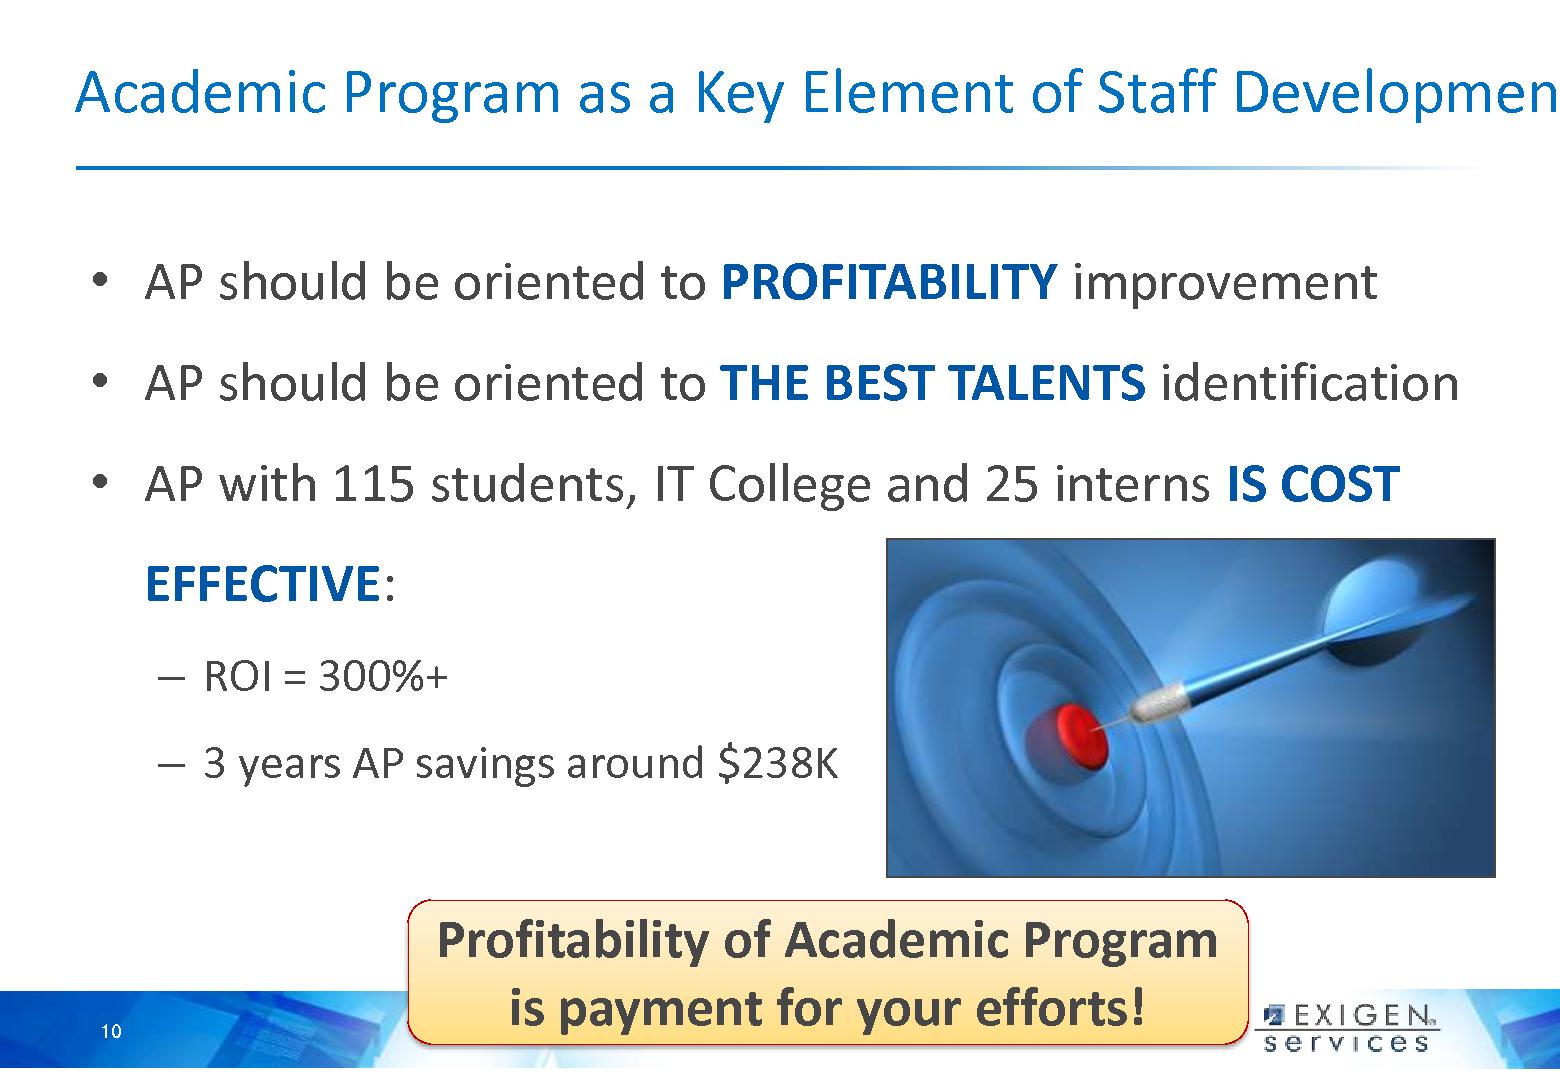 Файл:Академическая программа — ключевой элемент подготовки персонала в ИТ компаниях (SECR-2012).pdf